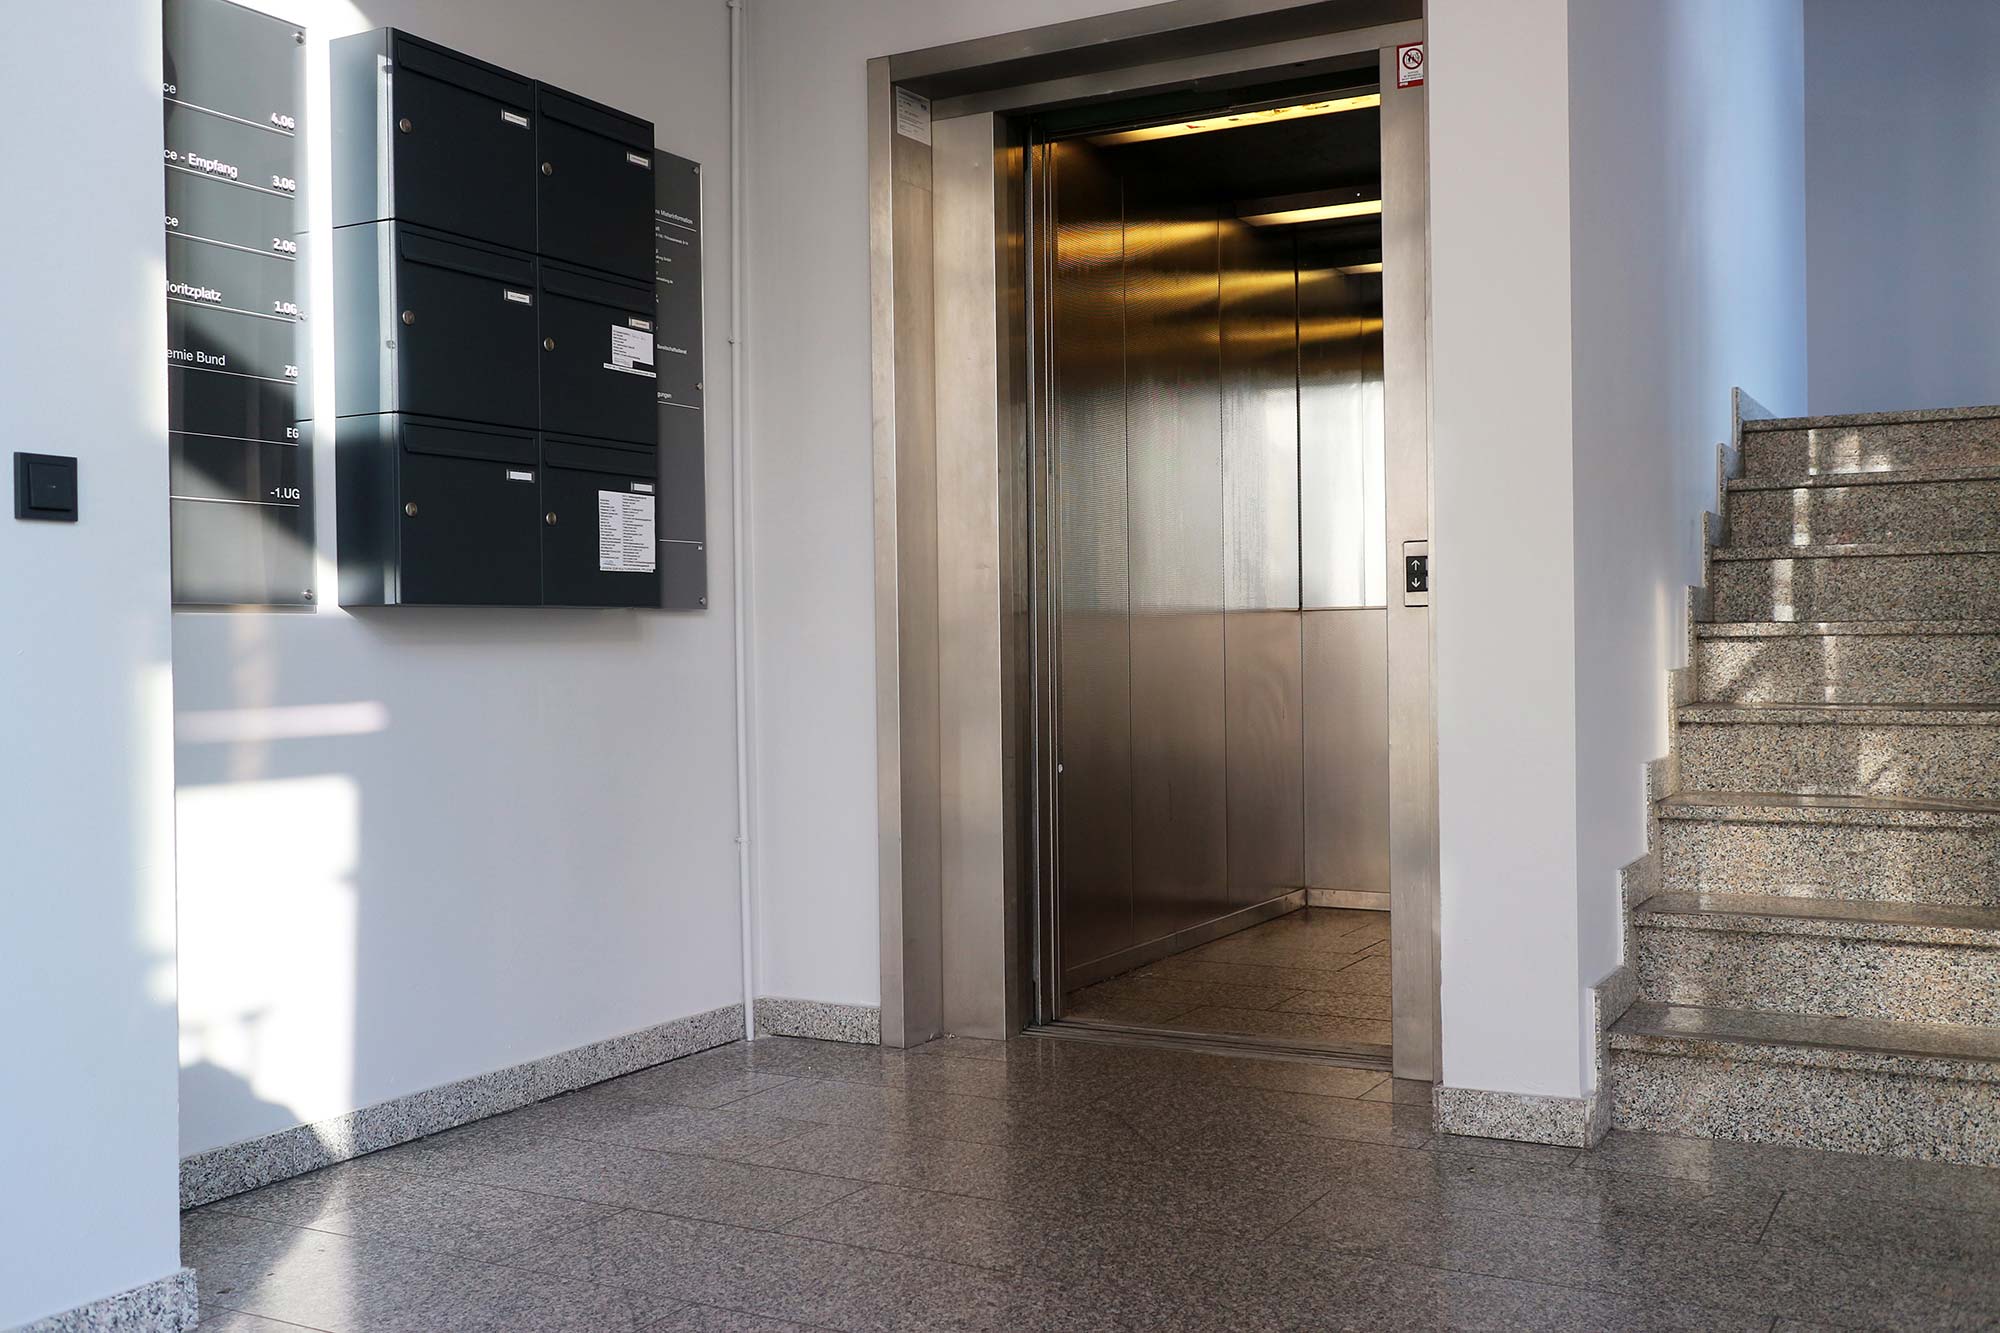 Der Eingangsbereich des Bürogebäudes hat weiße Wände und einen grau gesprenkelten Fußboden; links an der Wand hängen anthrazitfarbene Briefkästen; rechts gehen Stufen in Richtung erster Stock; dazwischen ist der Fahrstuhl dessen Tür offen ist; der Fahrstuhl ist silber